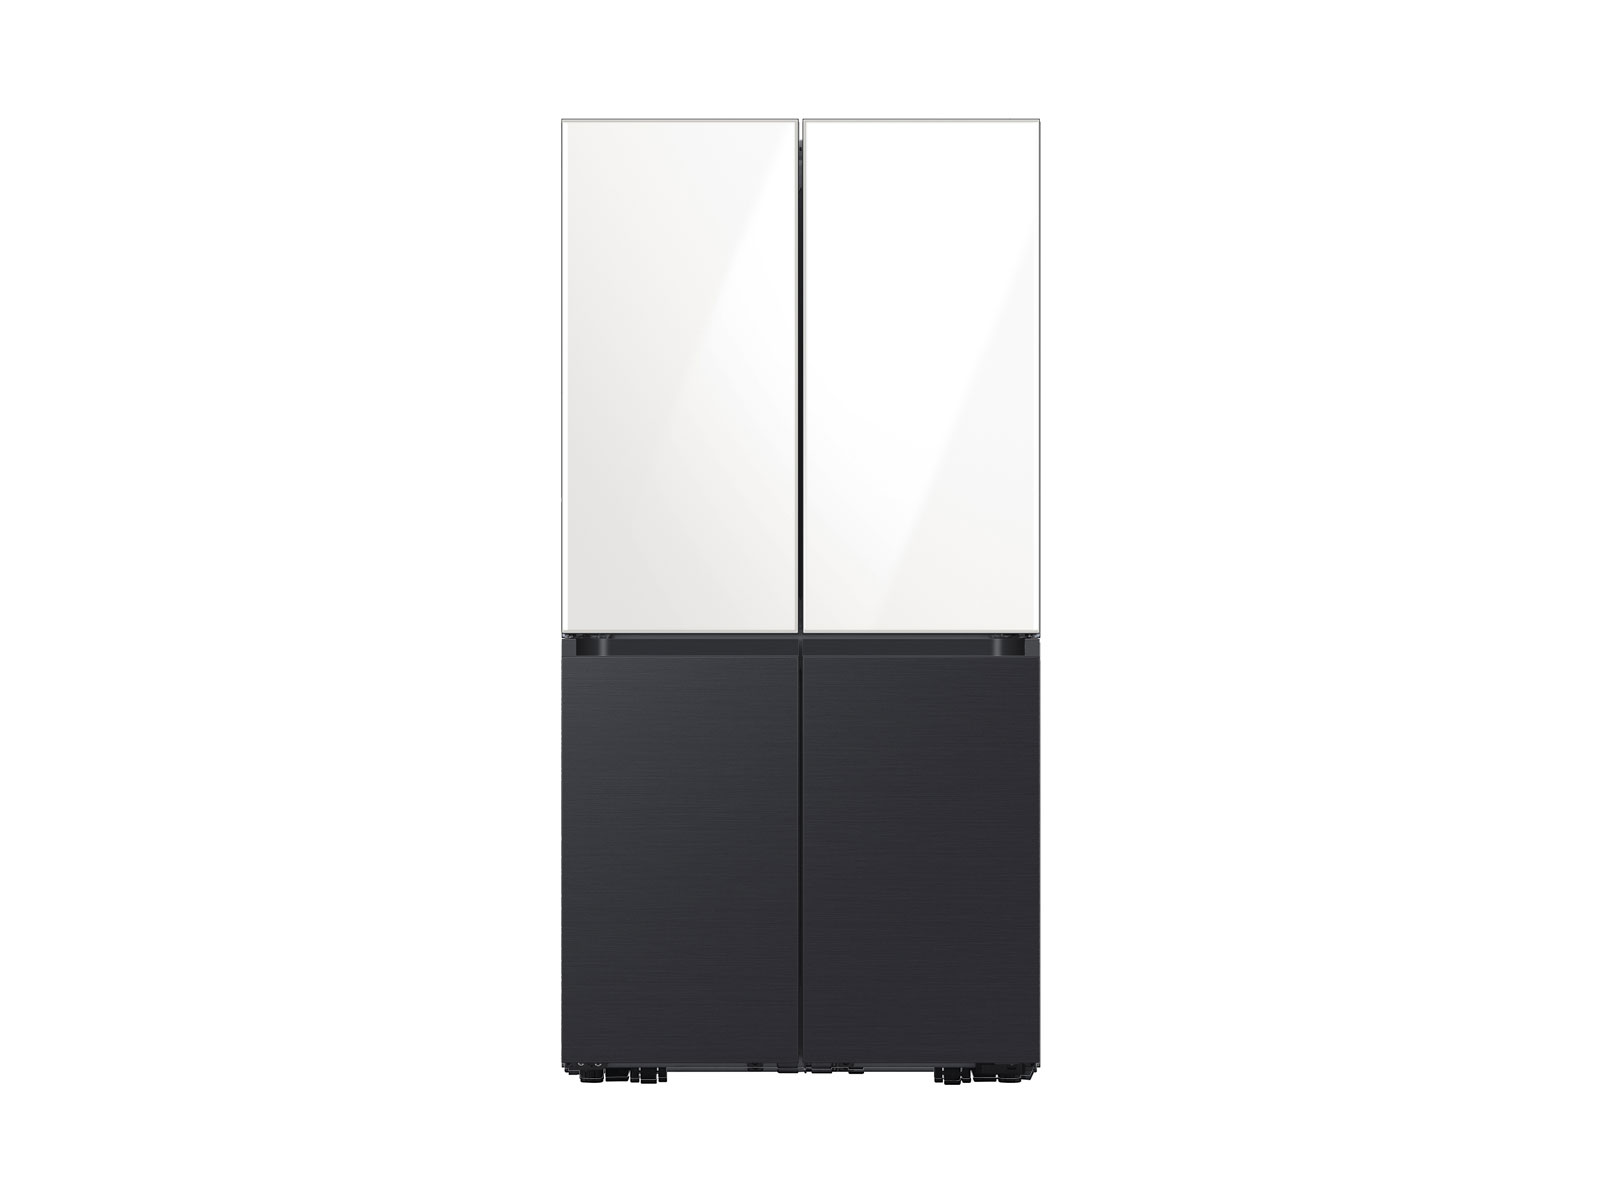 Samsung Bespoke 4-Door Flex™ Refrigerator in White Glass Top Black Steel Bottom (29 cu. ft.) in White Glass Top and Matte Black Steel Bottom